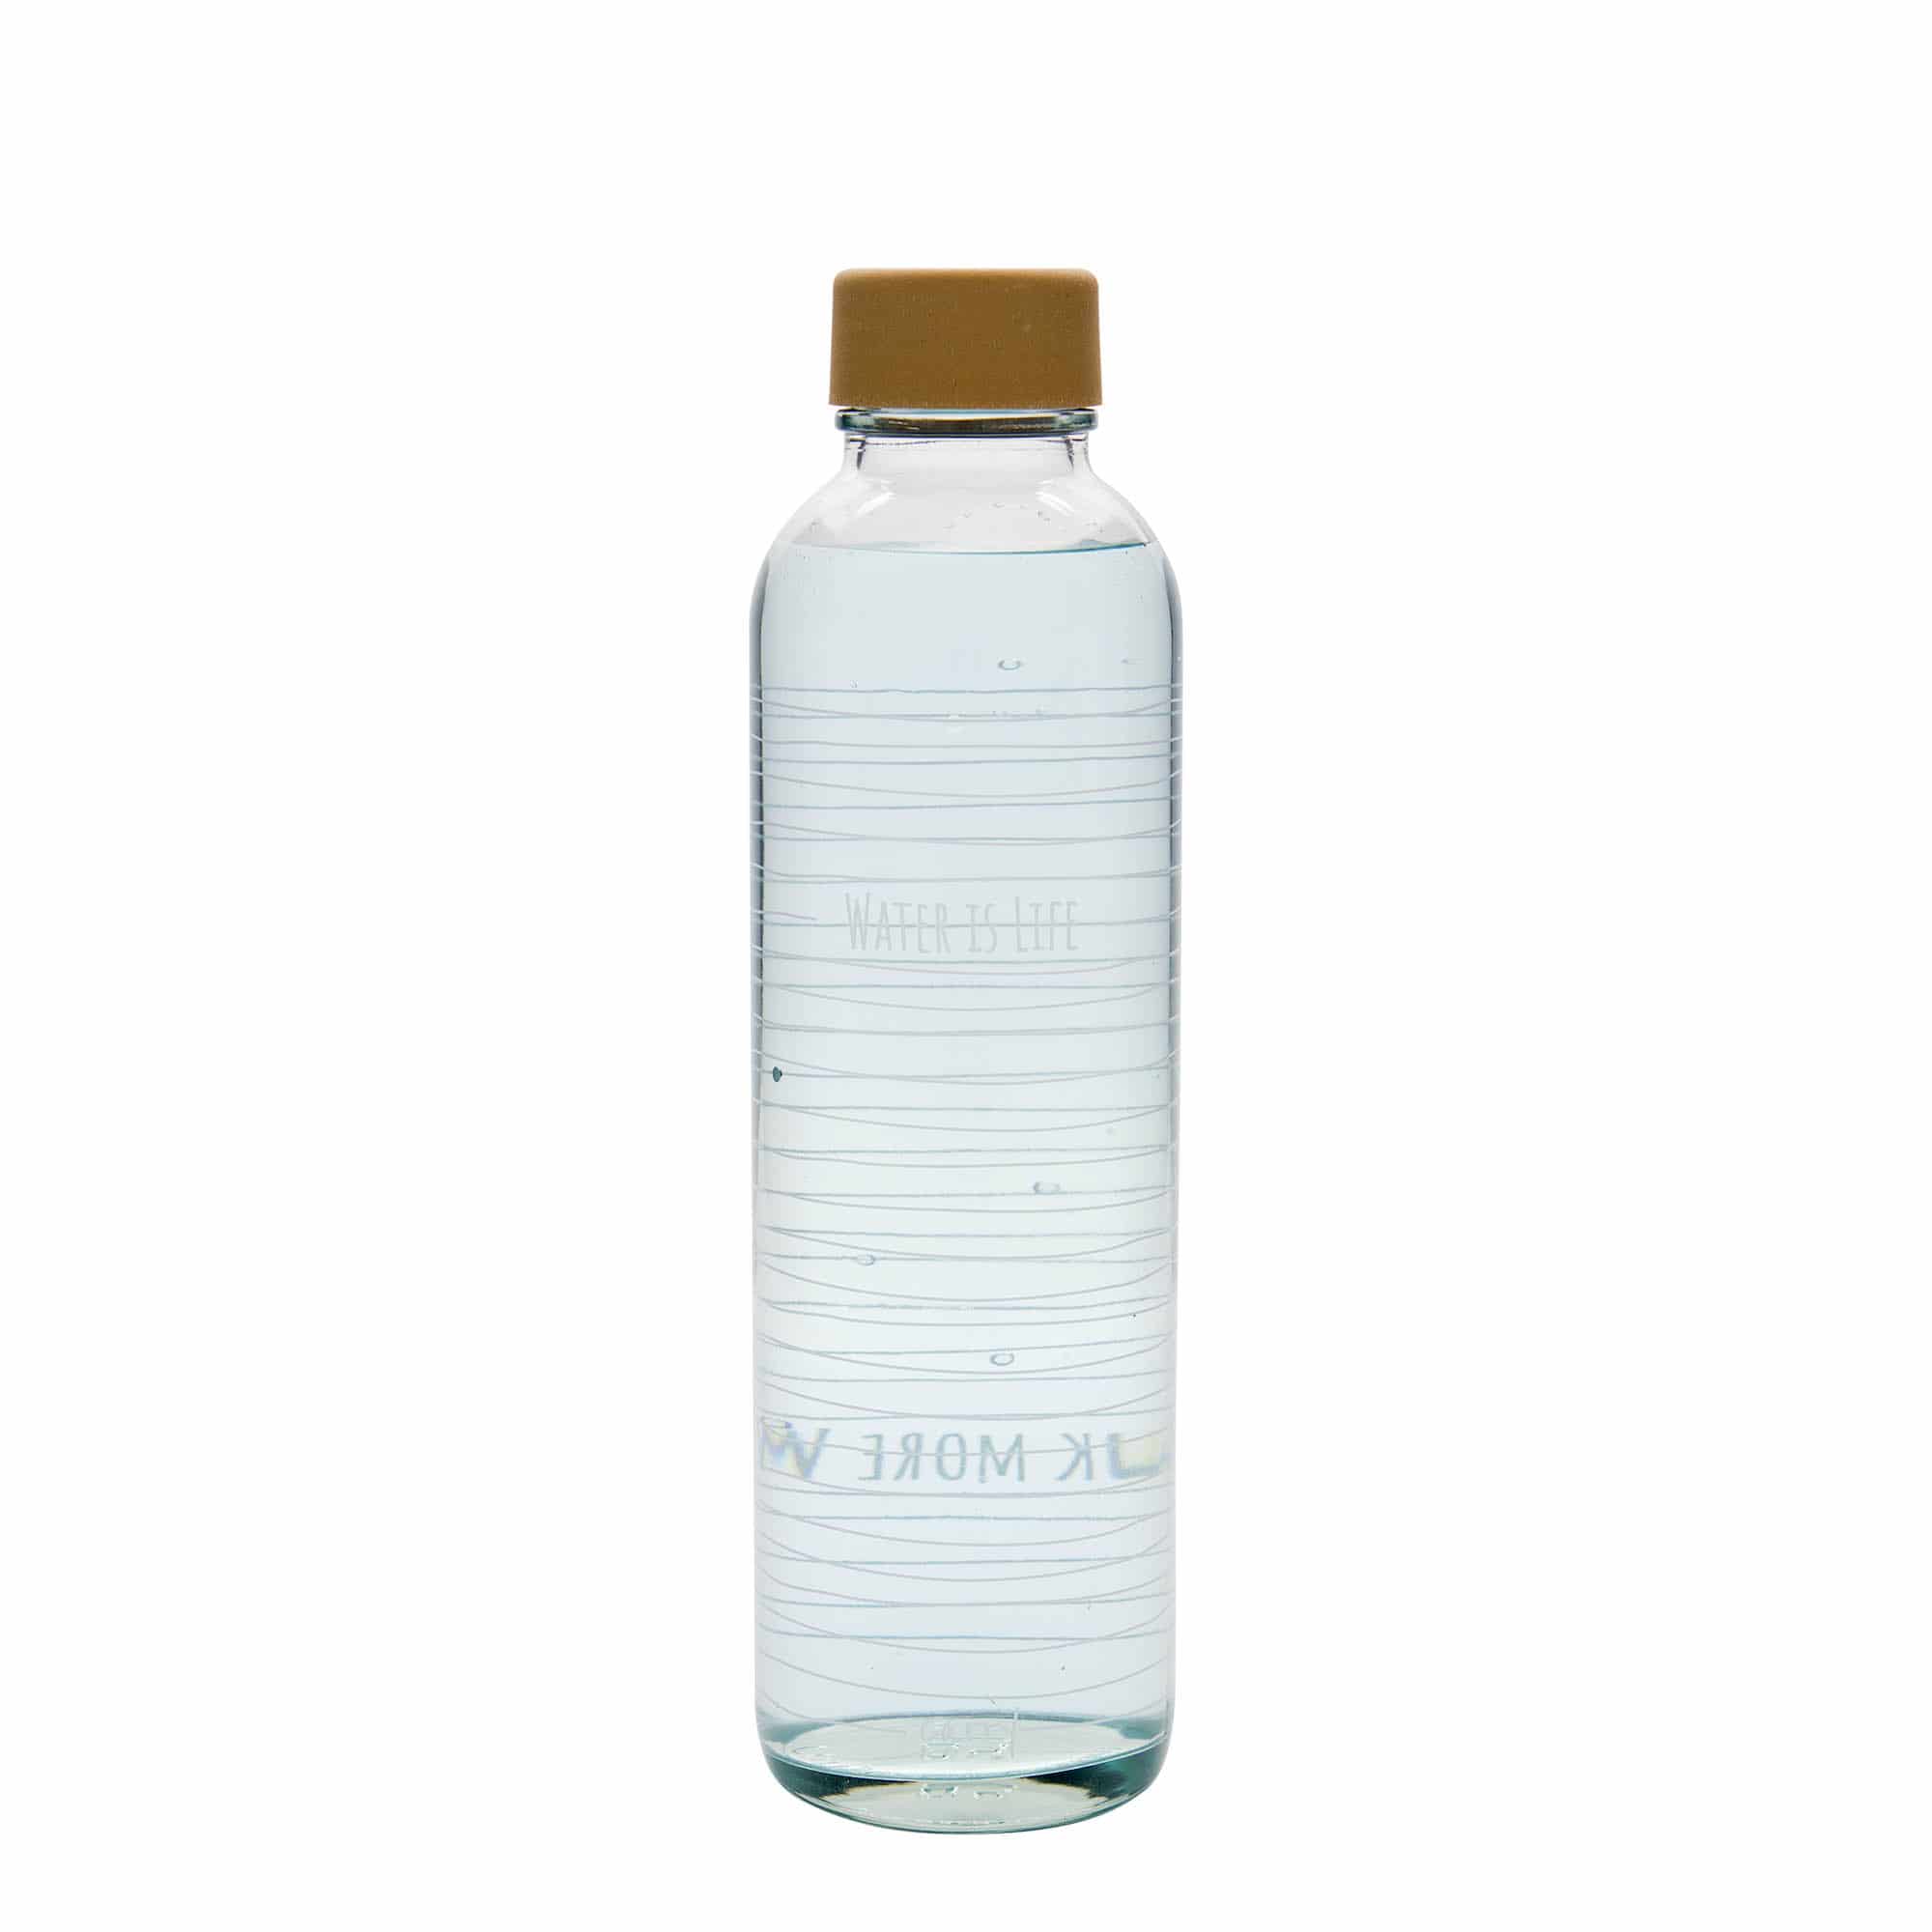 700 ml Trinkflasche CARRY Bottle 'Water is Life', Mündung: Schraubverschluss